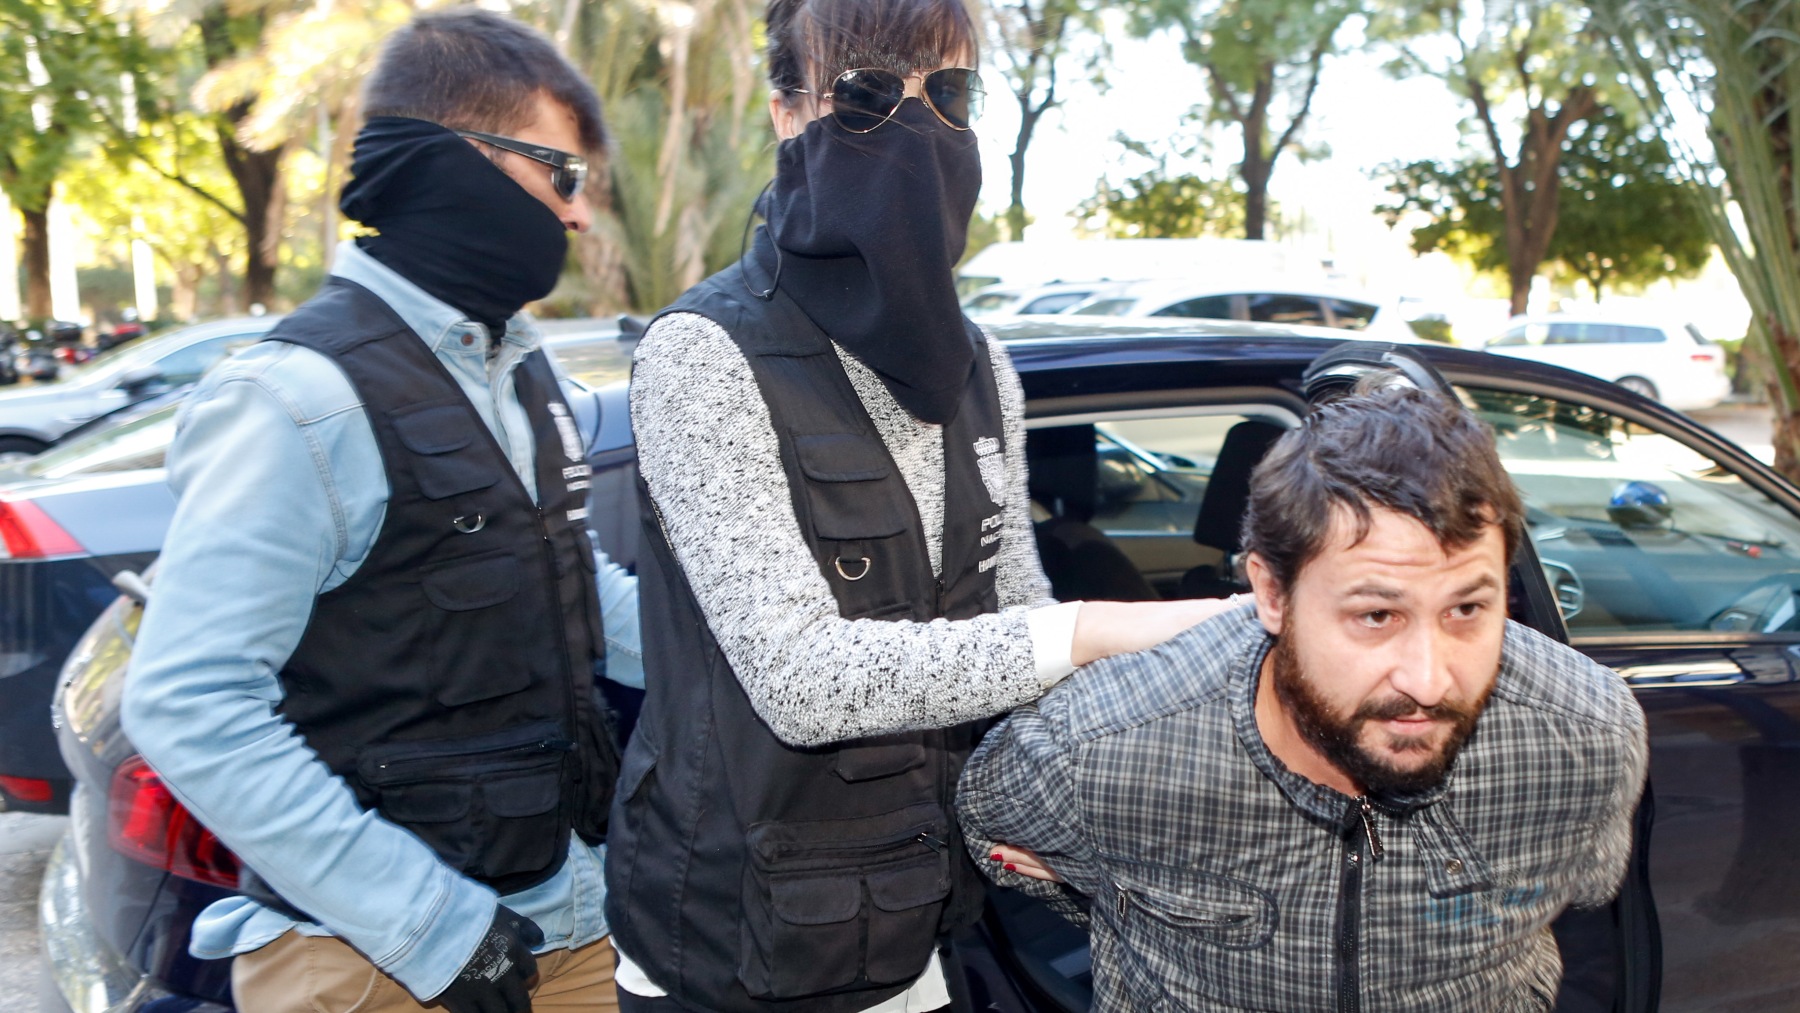 El hombre en prisión por matar a una mujer y violar a otra en parques de Sevilla (EUROPA PRESS).